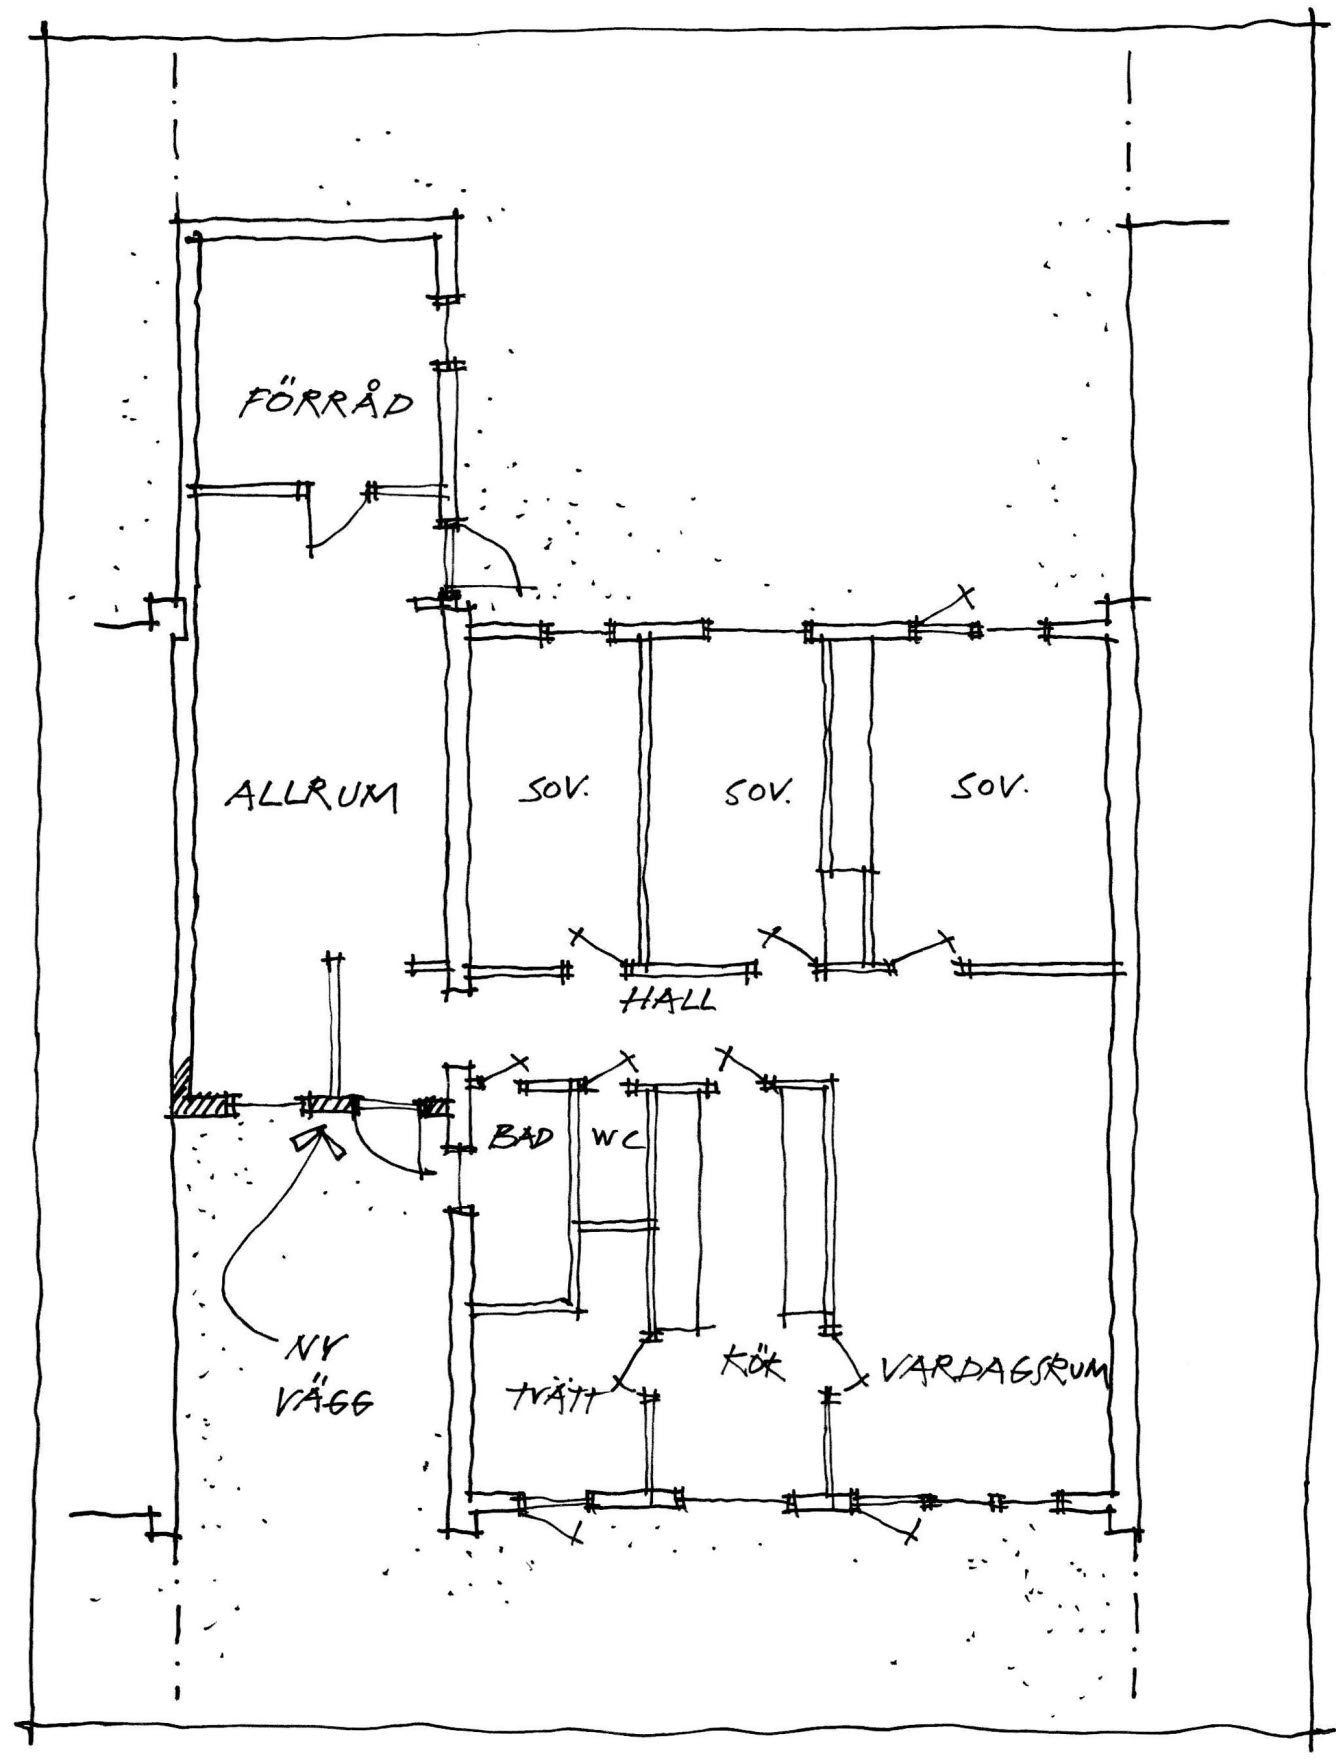 Illustration av en planritning av en villa där garage är ersatt med allrum.